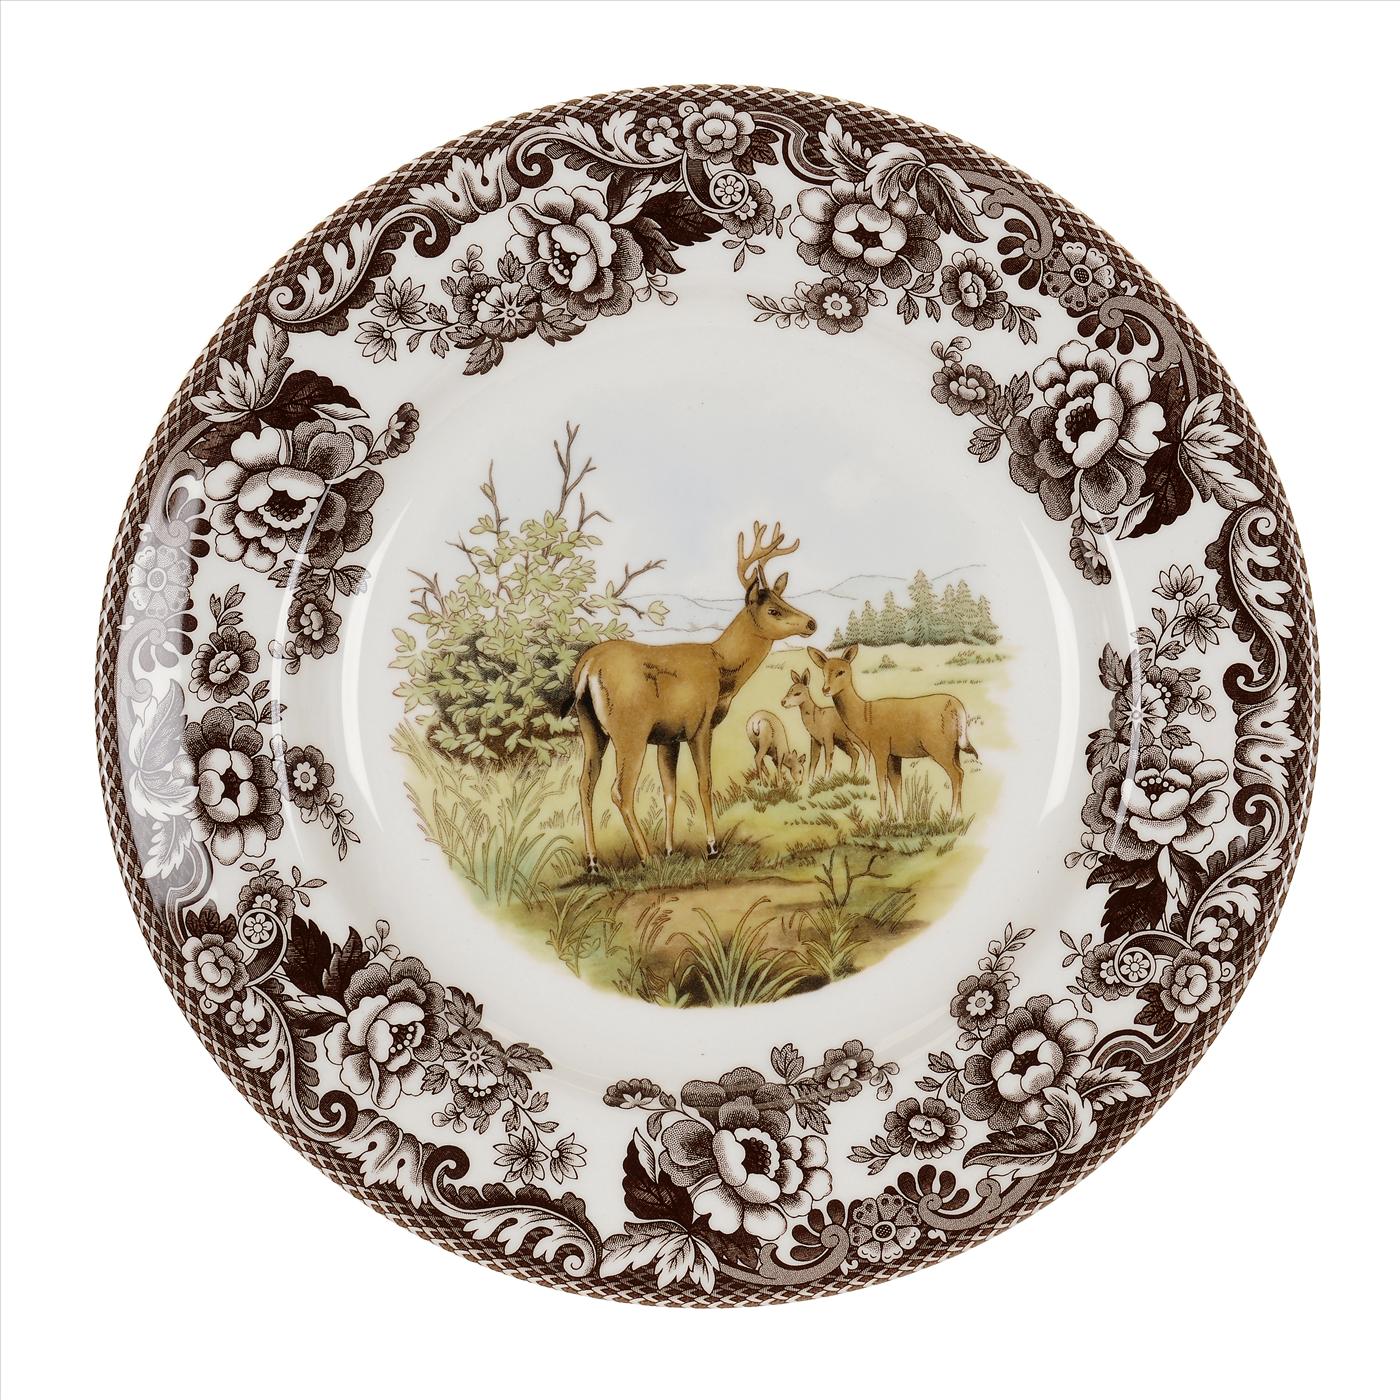 Woodland Dinner Plate 10.5 Inch, Mule Deer image number null